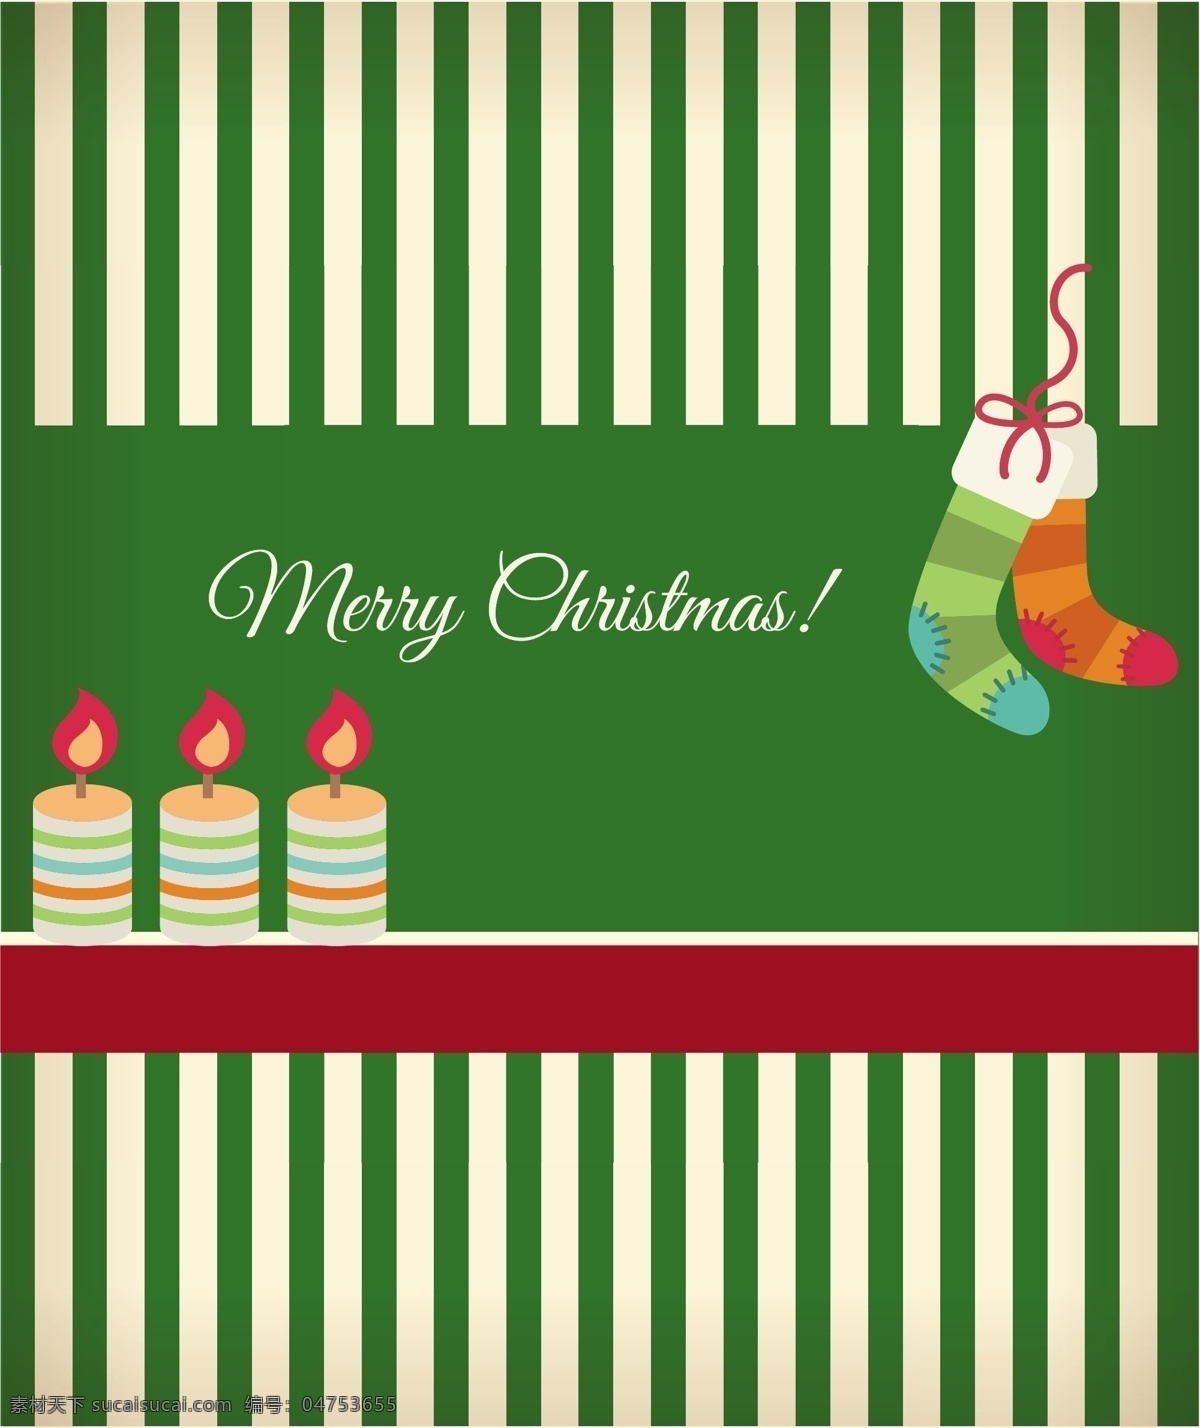 圣诞袜和蜡烛 新年快乐 christmas 2016 圣诞节 元素 平安夜 圣诞节海报 节日背景 卡通 插画 蜡烛 圣诞袜 节日素材 矢量素材